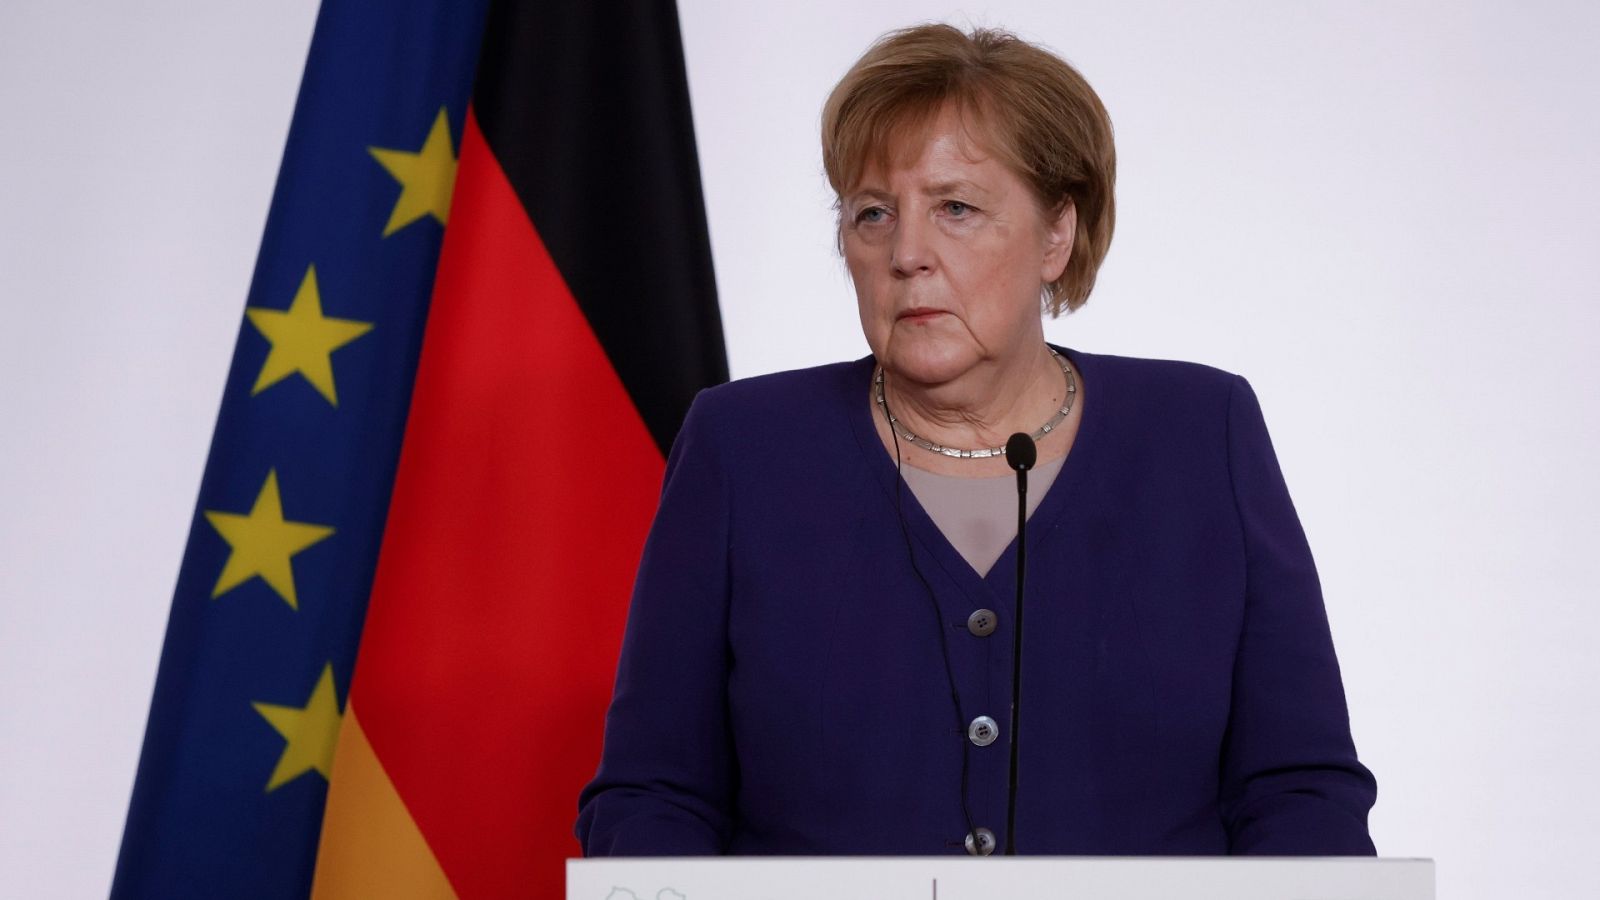 La canciller alemana Angela Merkel durante la conferencia